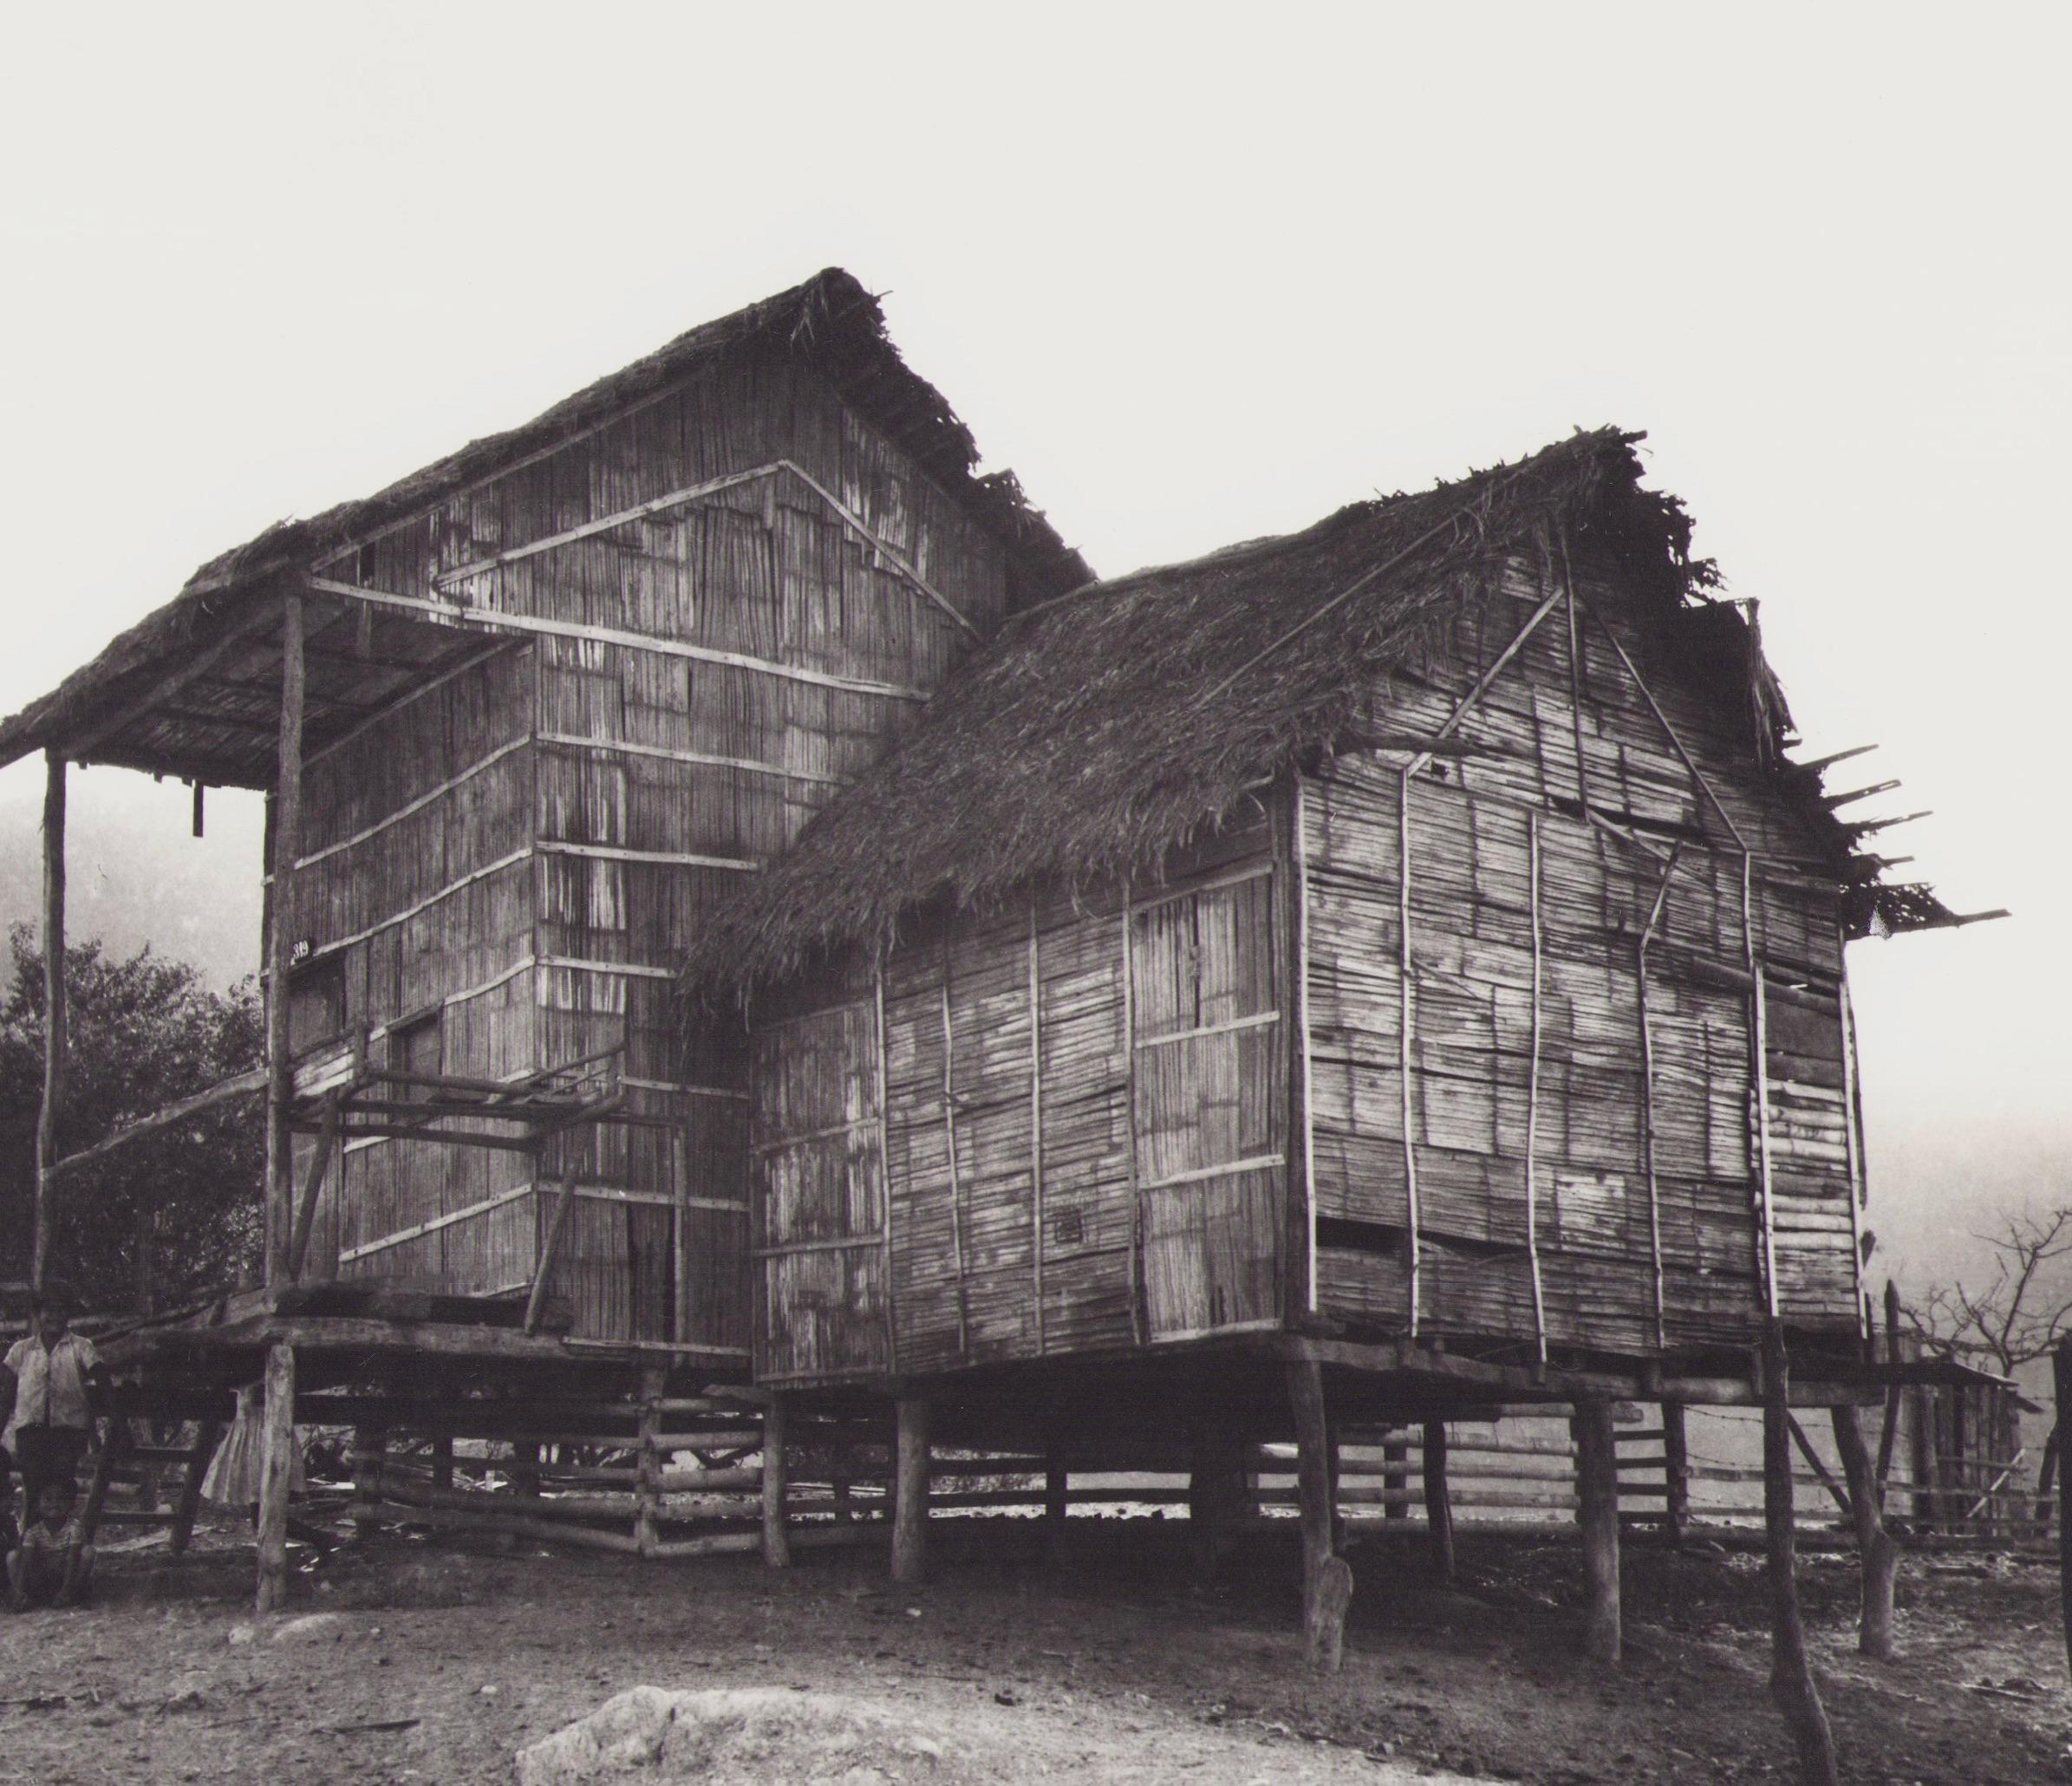 Équateur, Maison, photographie en noir et blanc, années 1960, 23,5 x 26,7 cm - Photograph de Hanna Seidel